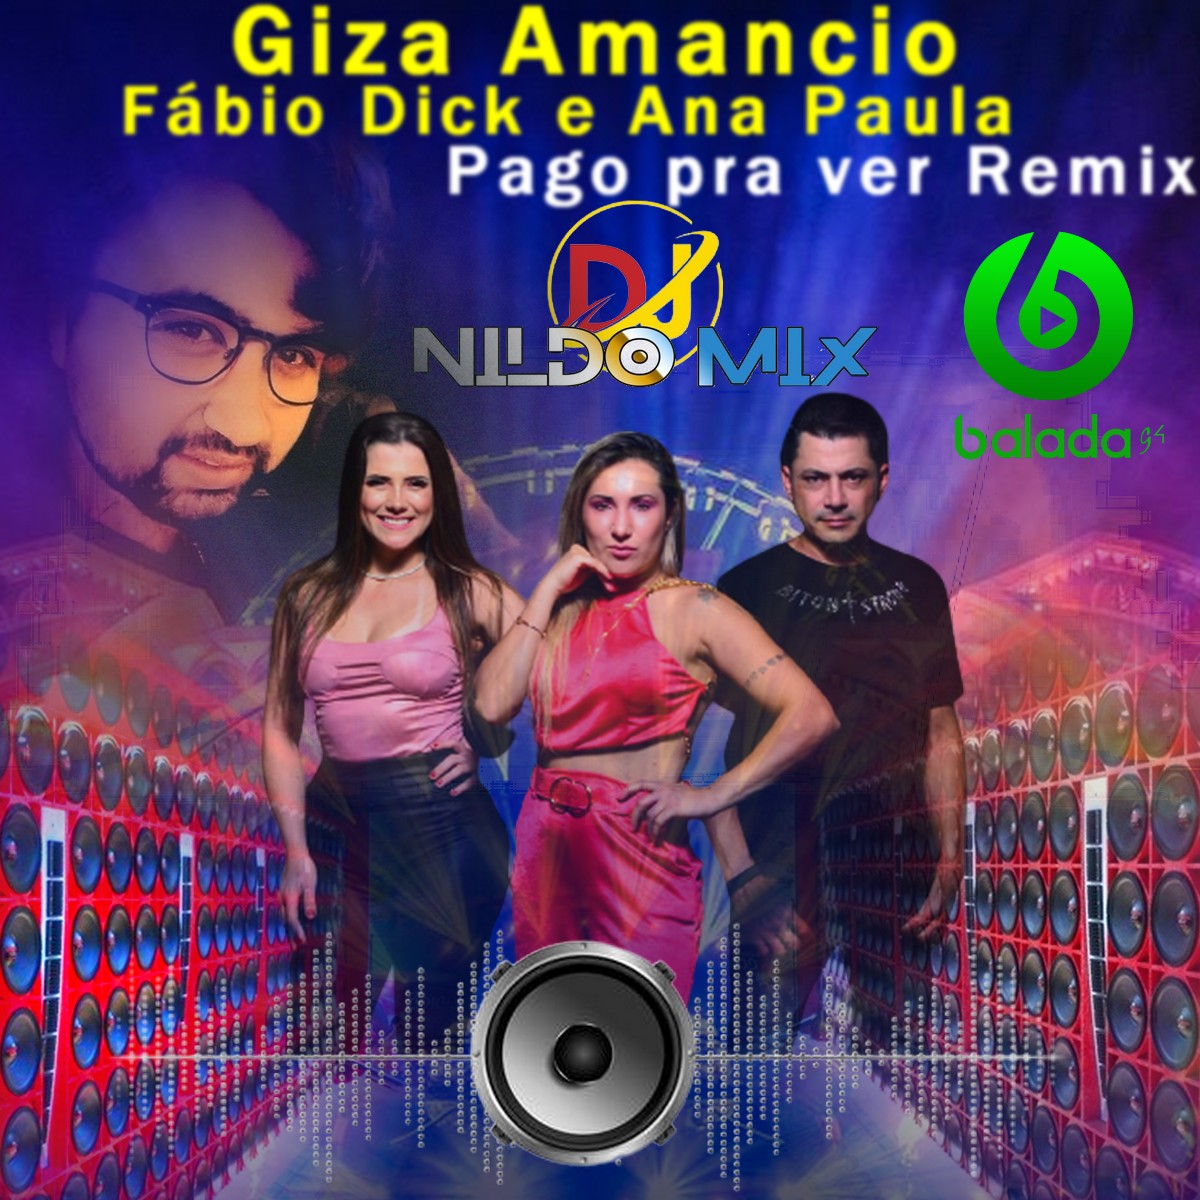 Giza Amancio  feat Fábio Dick e Ana Paula Pago pra ver Remix Dj Nildo Mix